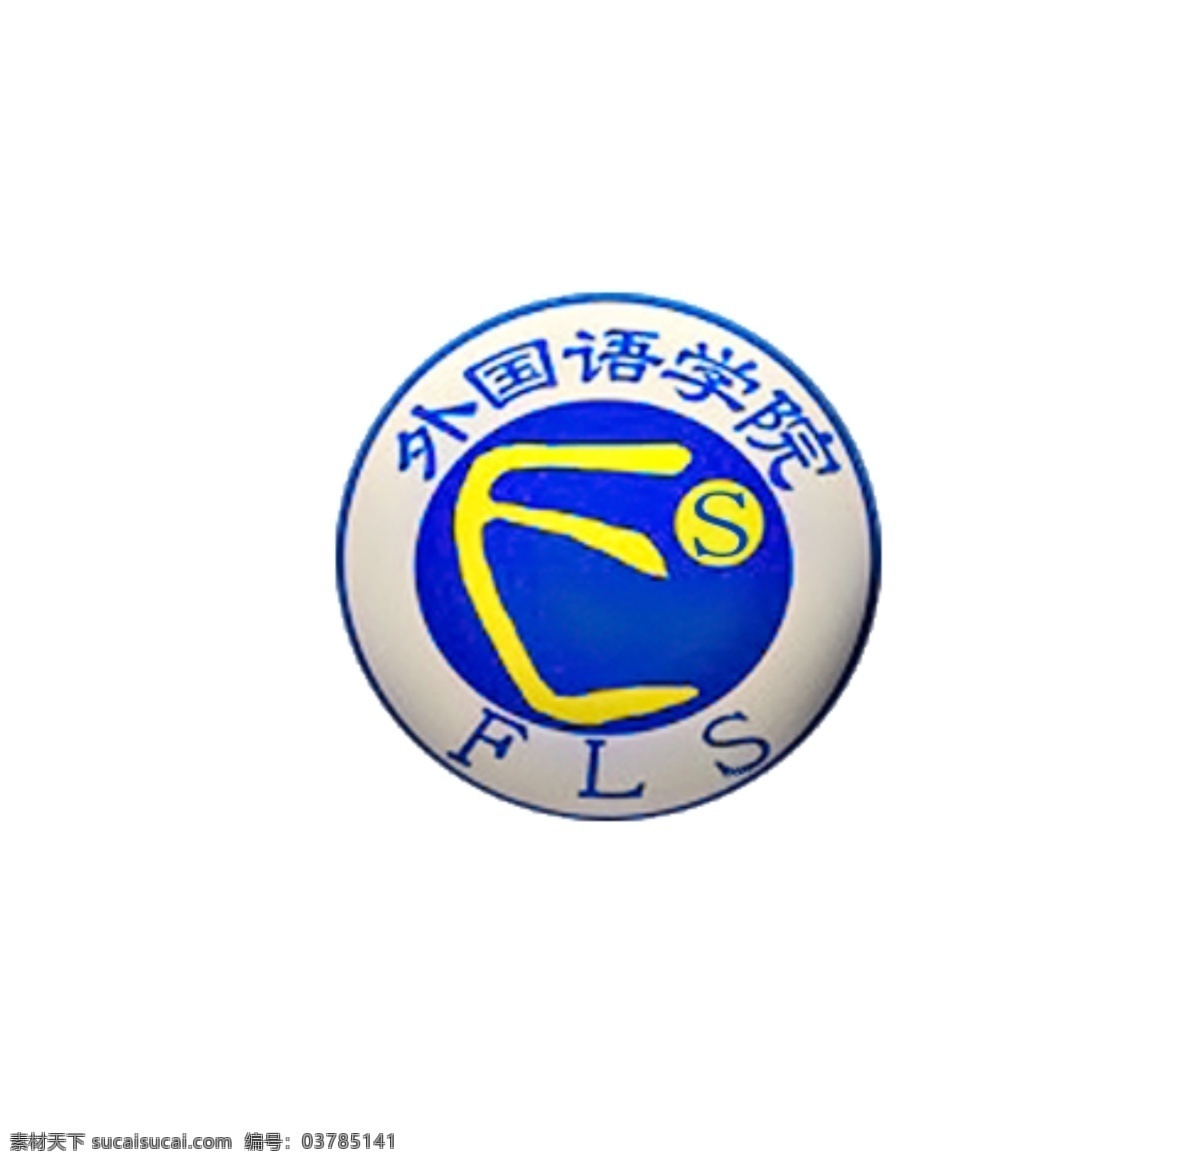 贵州 师范学院 外国语 学院 院 徽 贵州师范学院 logo